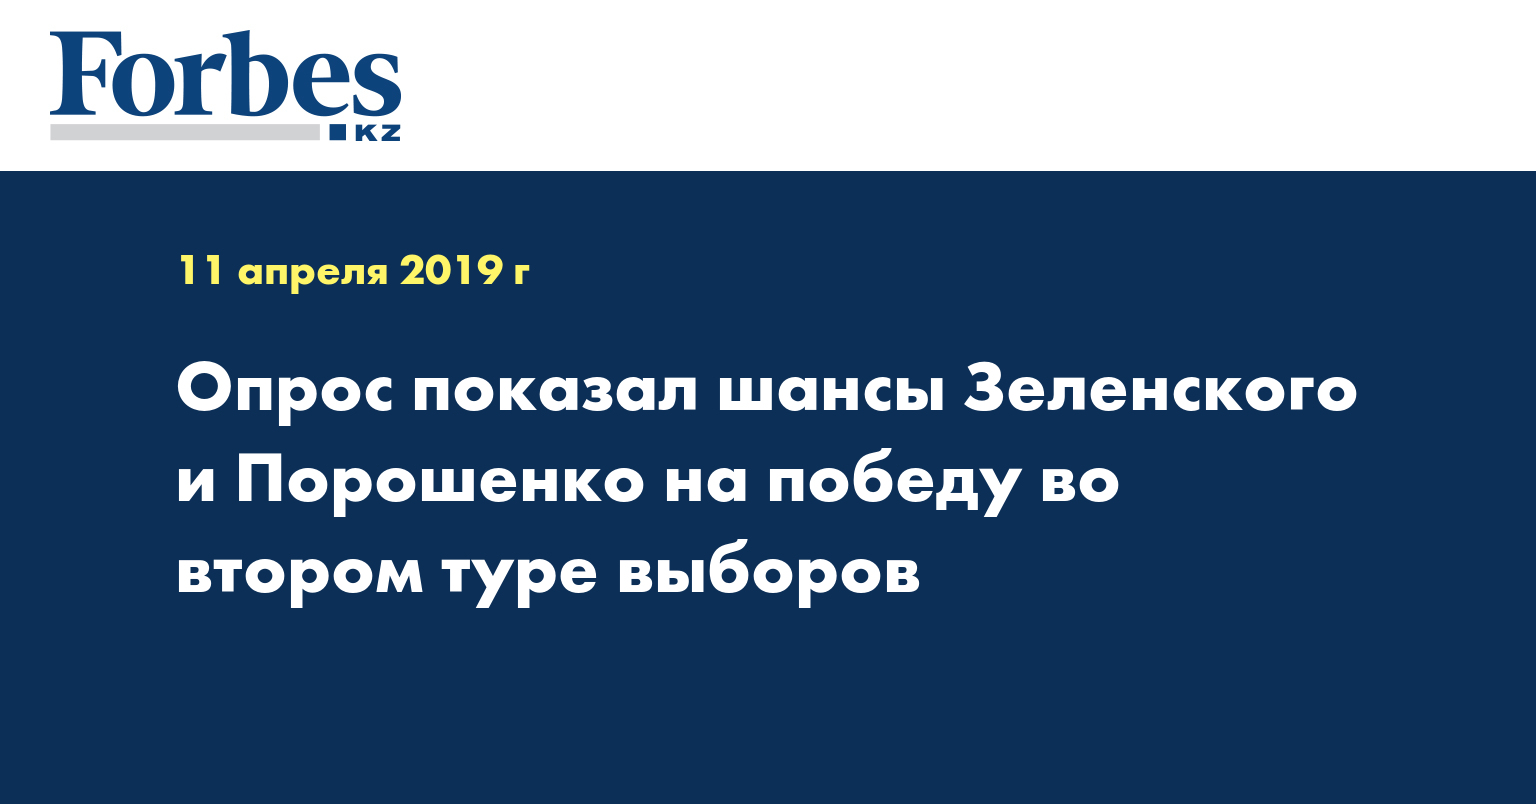 Опрос показал шансы Зеленского и Порошенко на победу во втором туре выборов